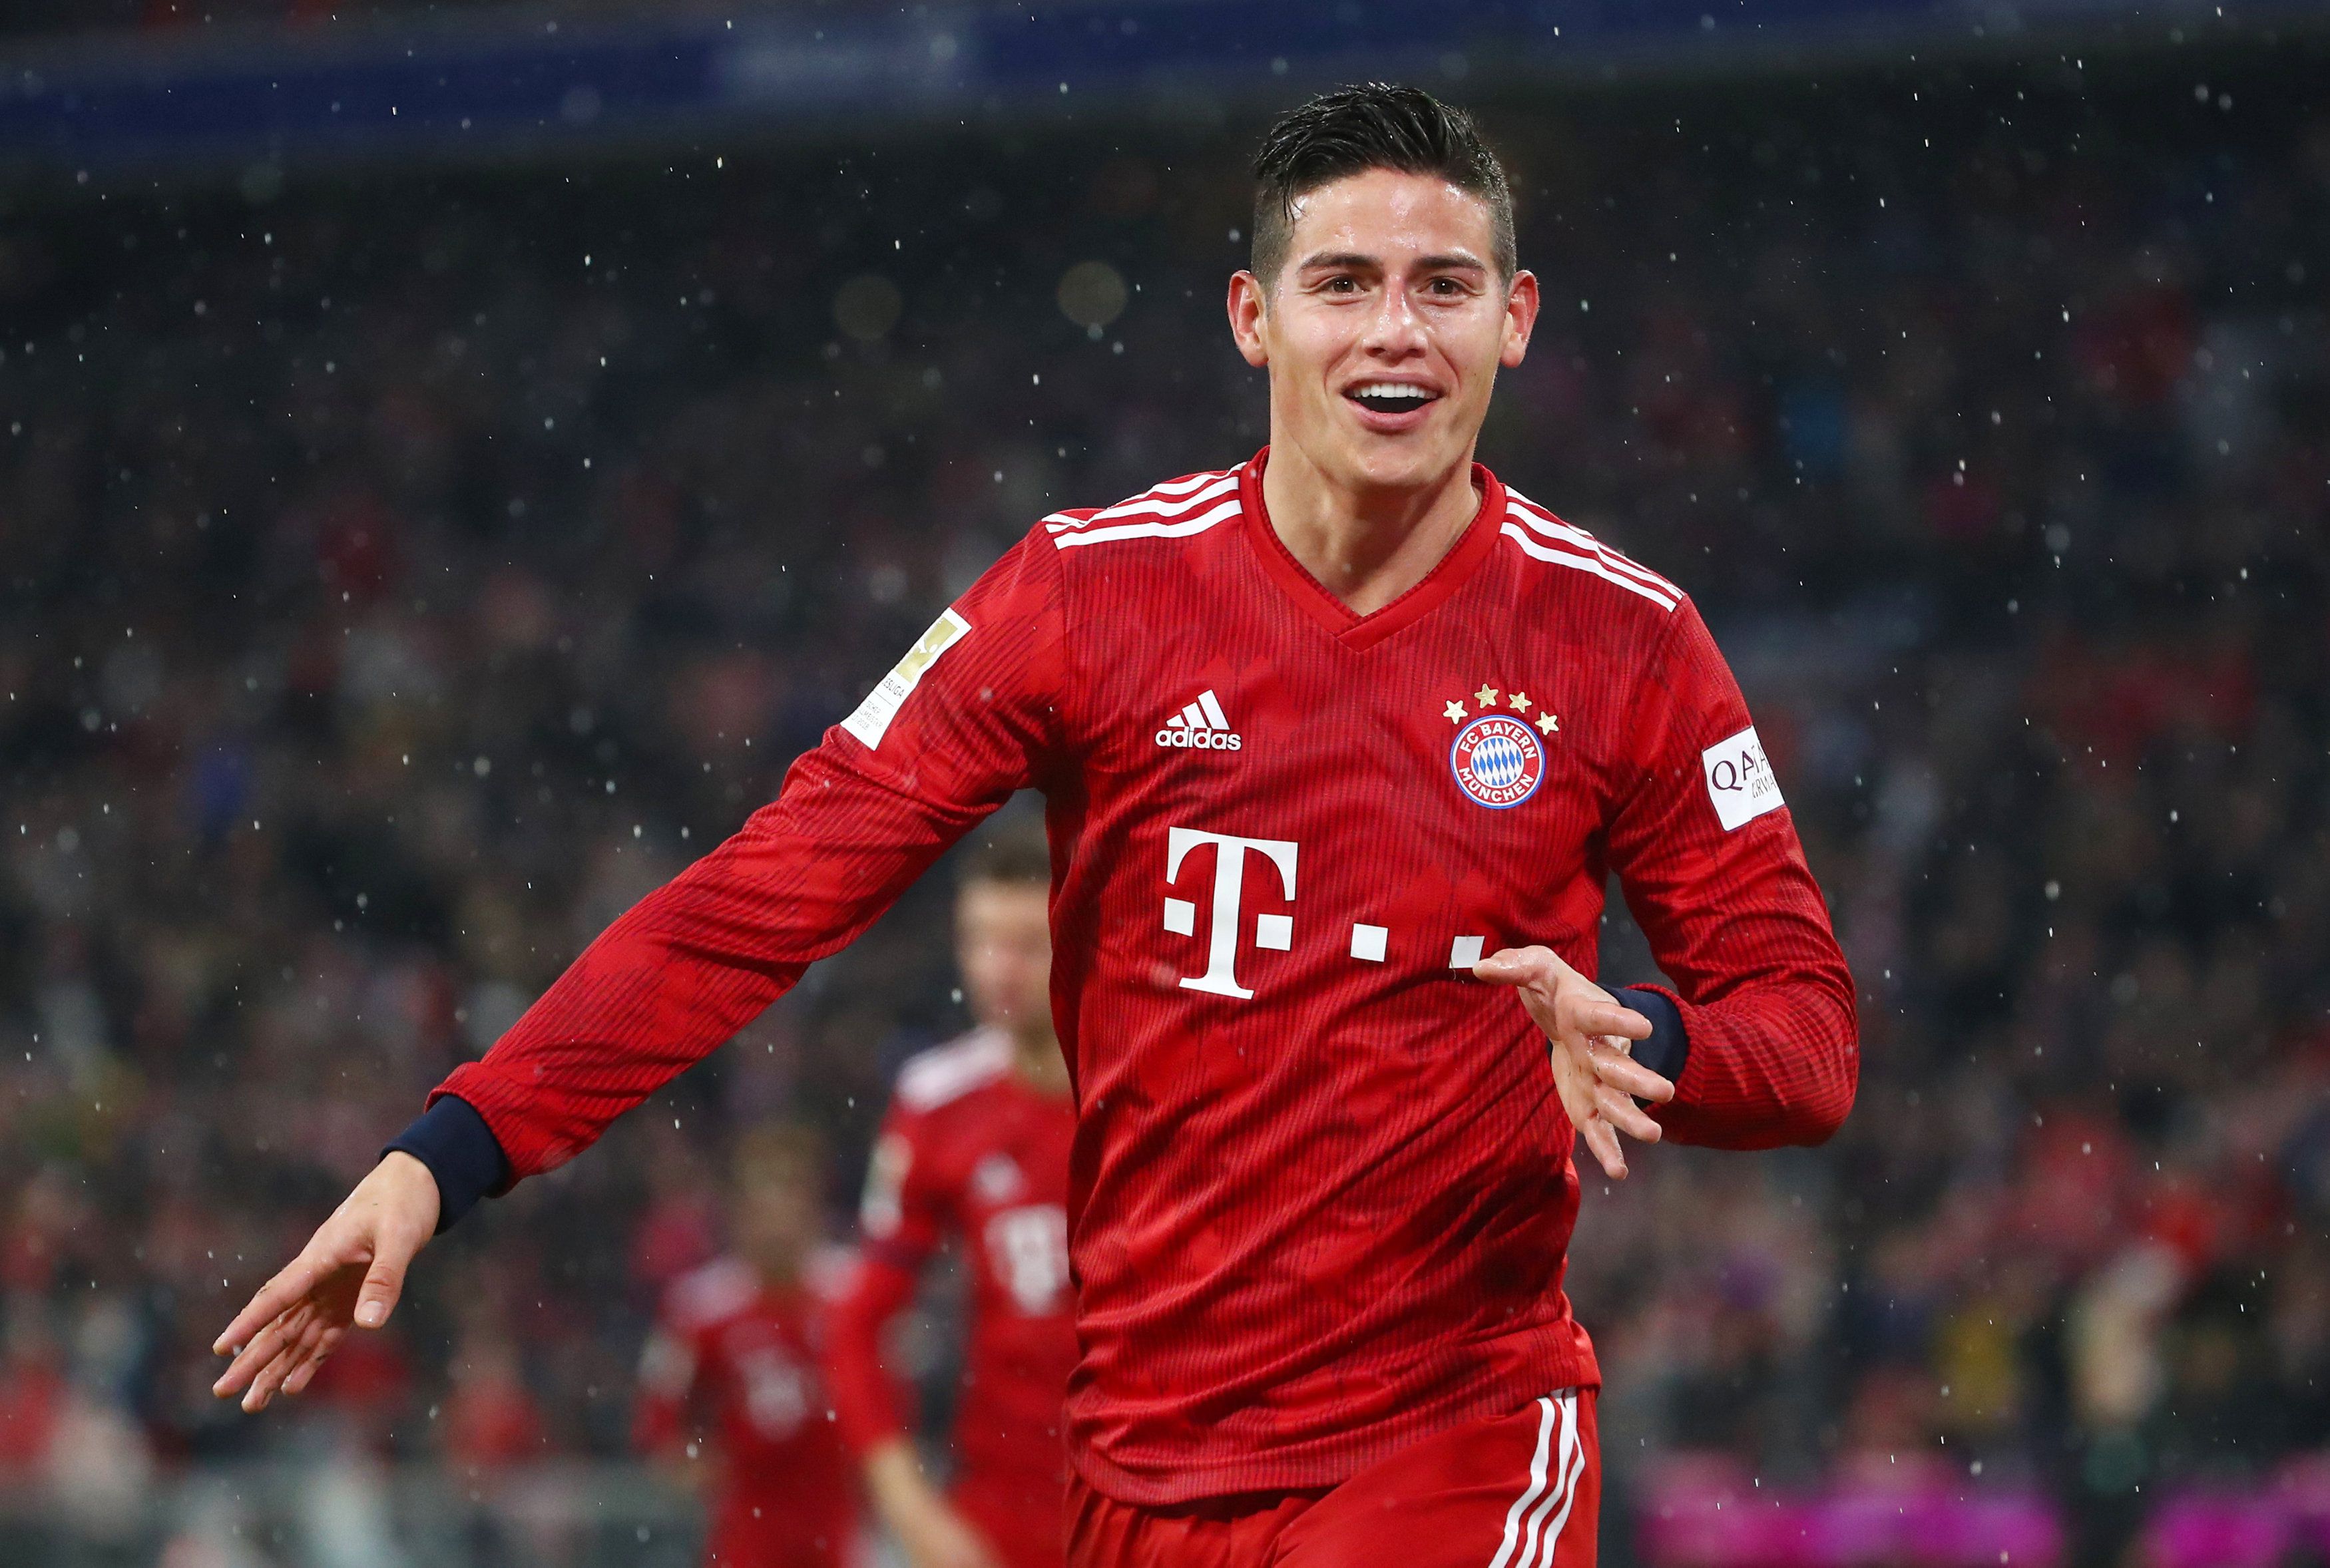 James Rodríguez fue el último colombiano en ganar la Bundesliga con el Bayern Munich en 2019 - crédito Michael Dalder/REUTERS